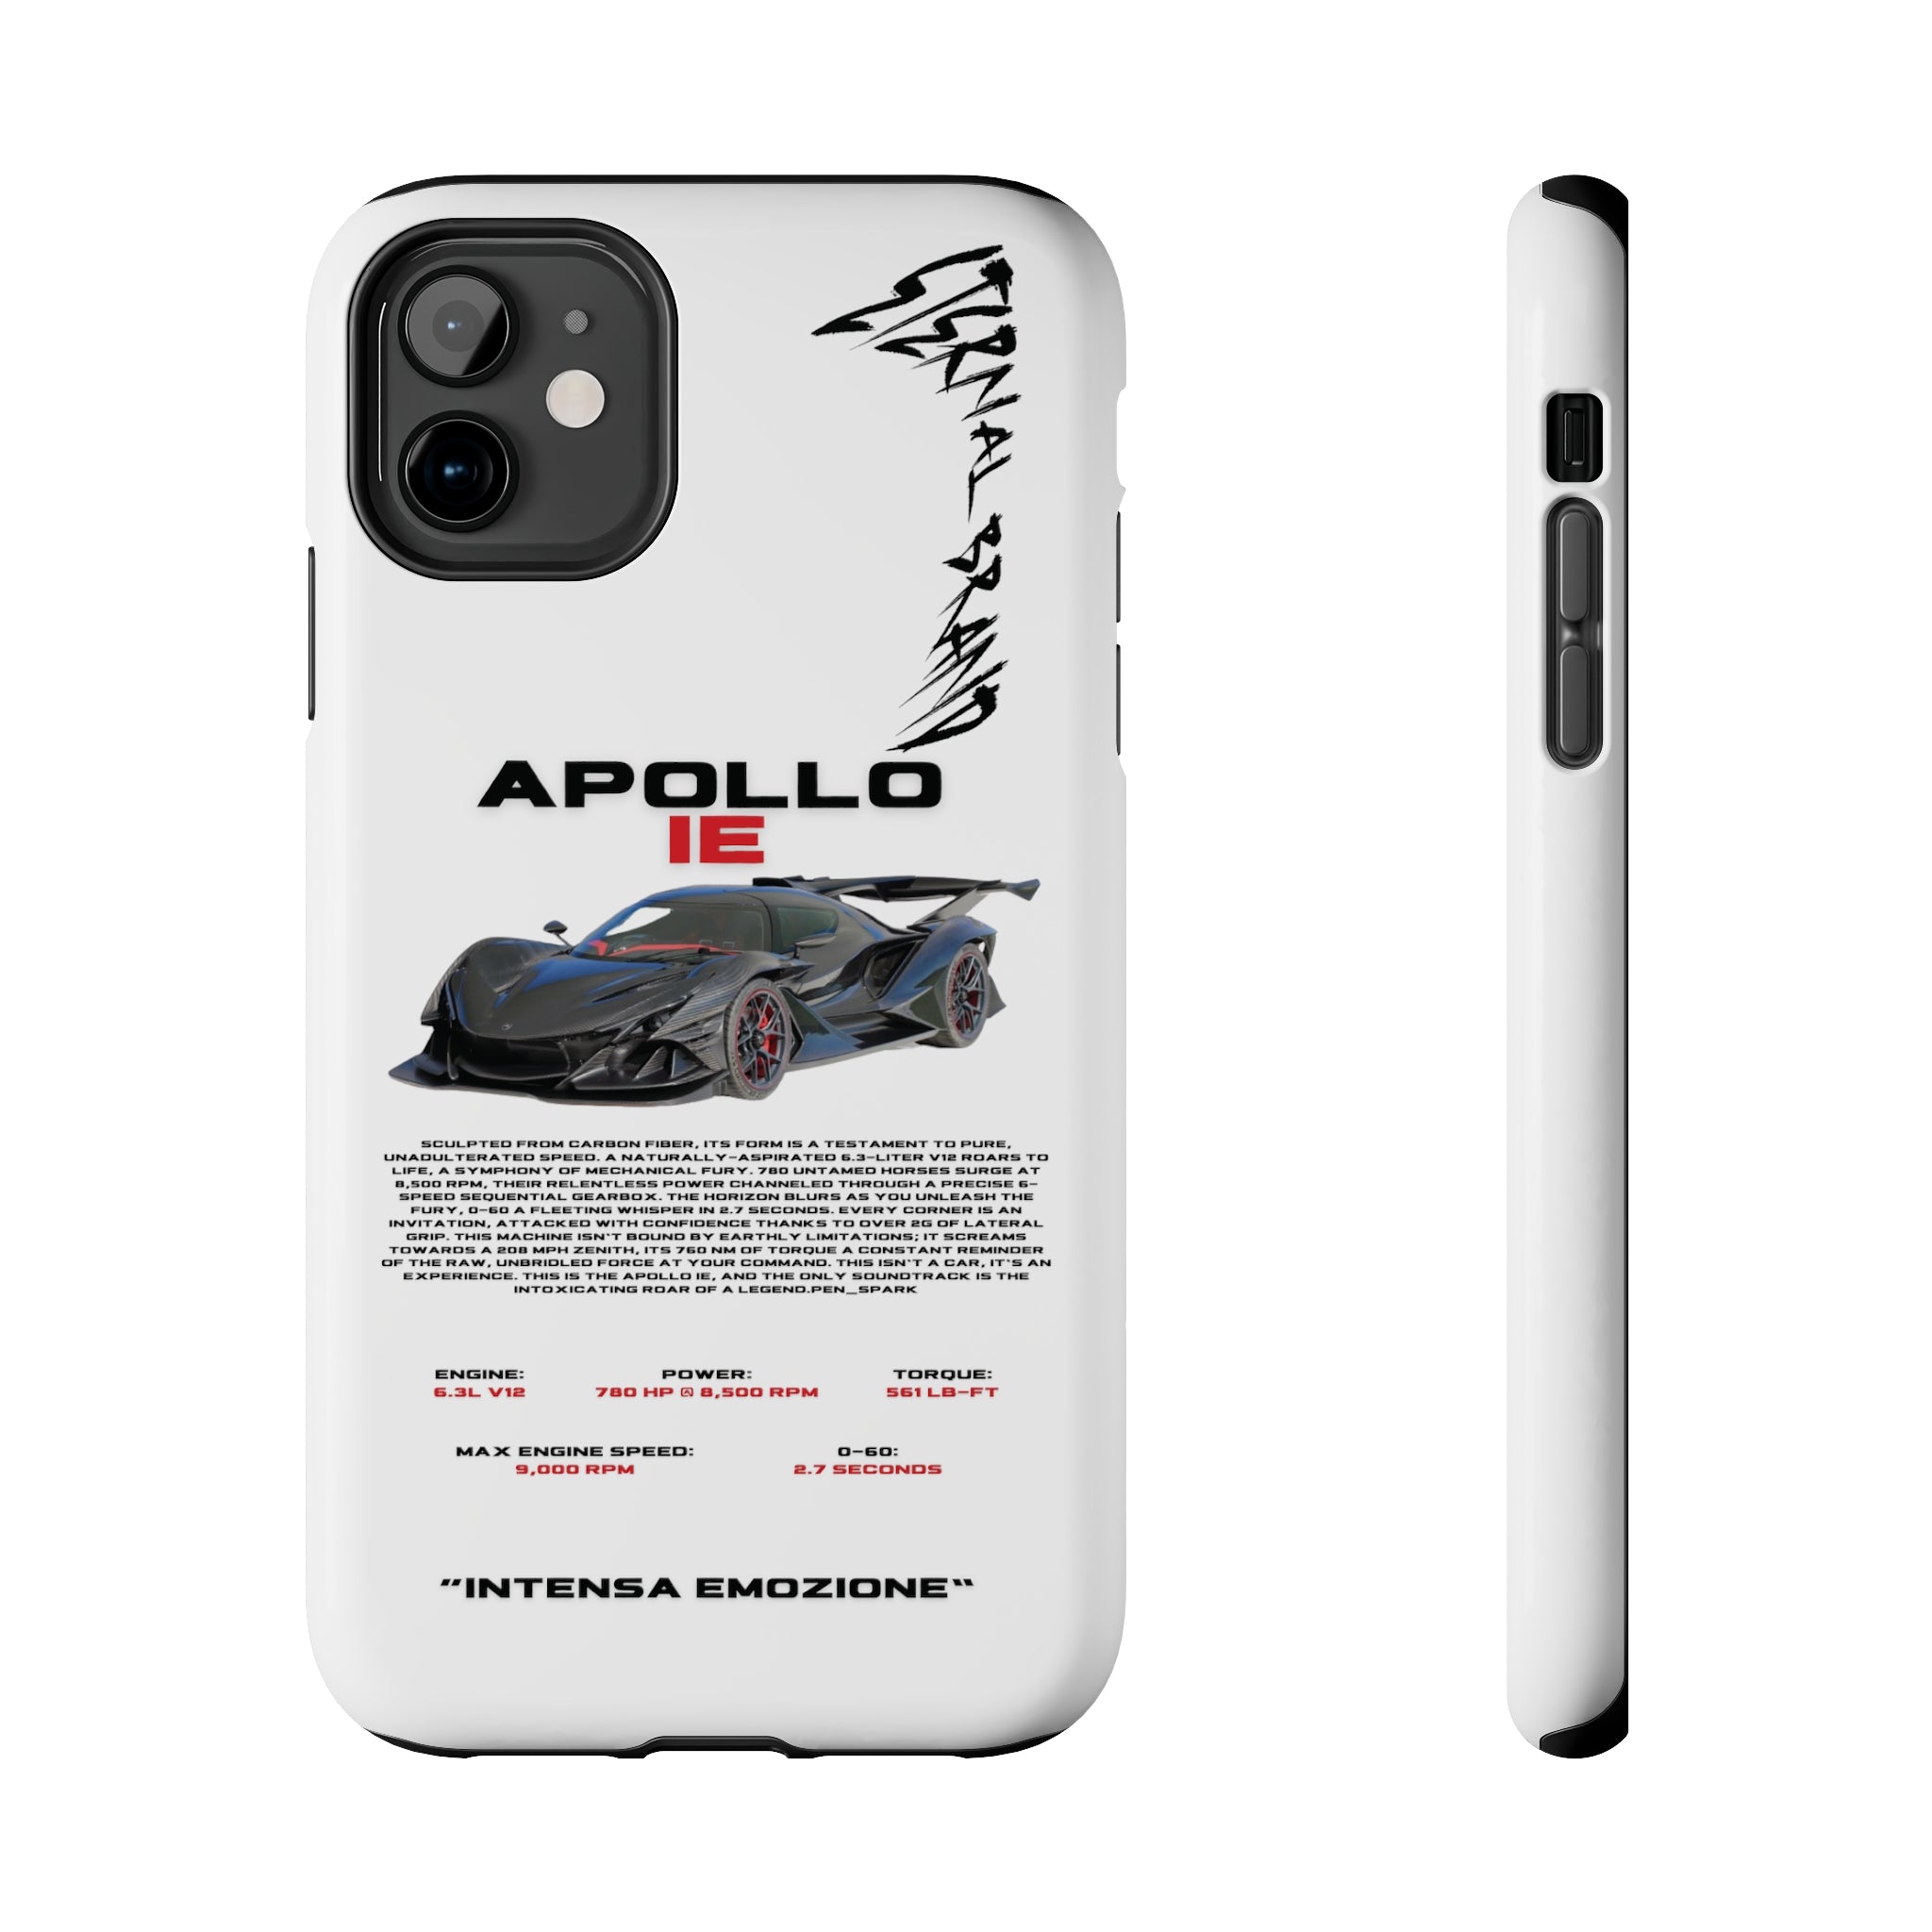 Apollo IE "Full Carbon" "White"